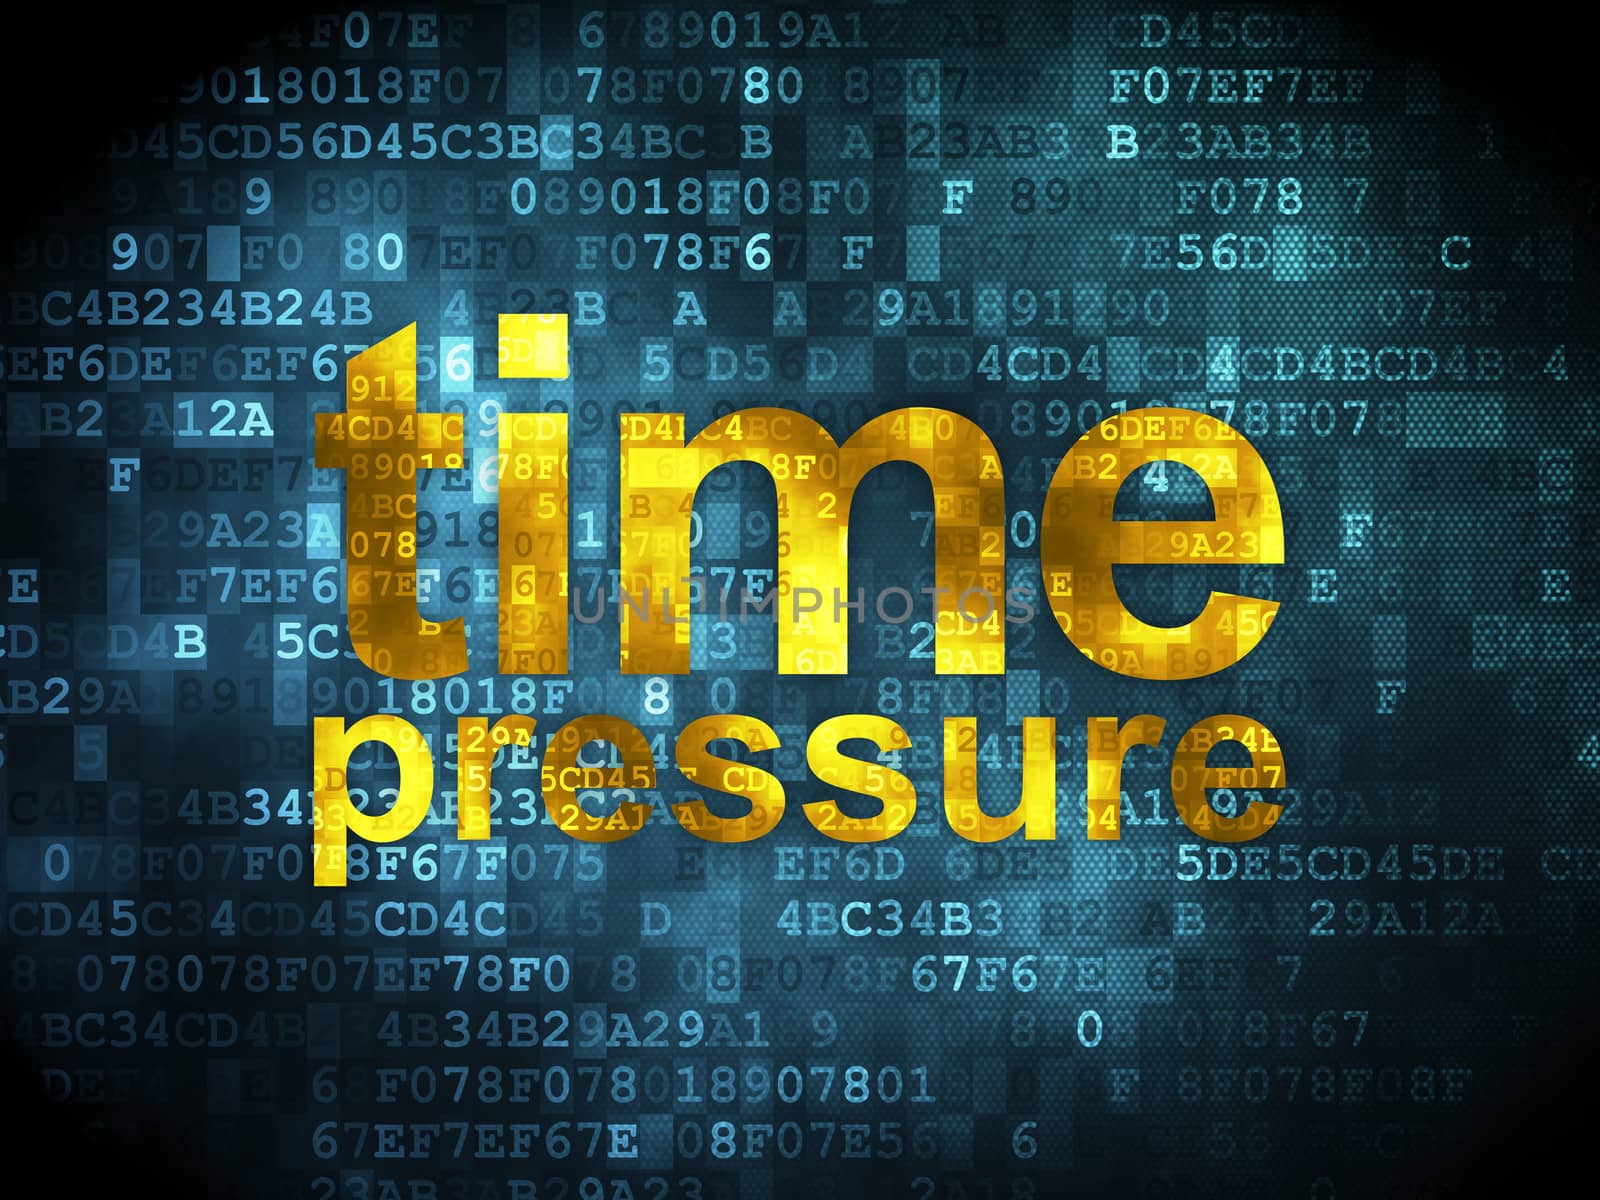 Timeline concept: pixelated words Time Pressure on digital background, 3d render